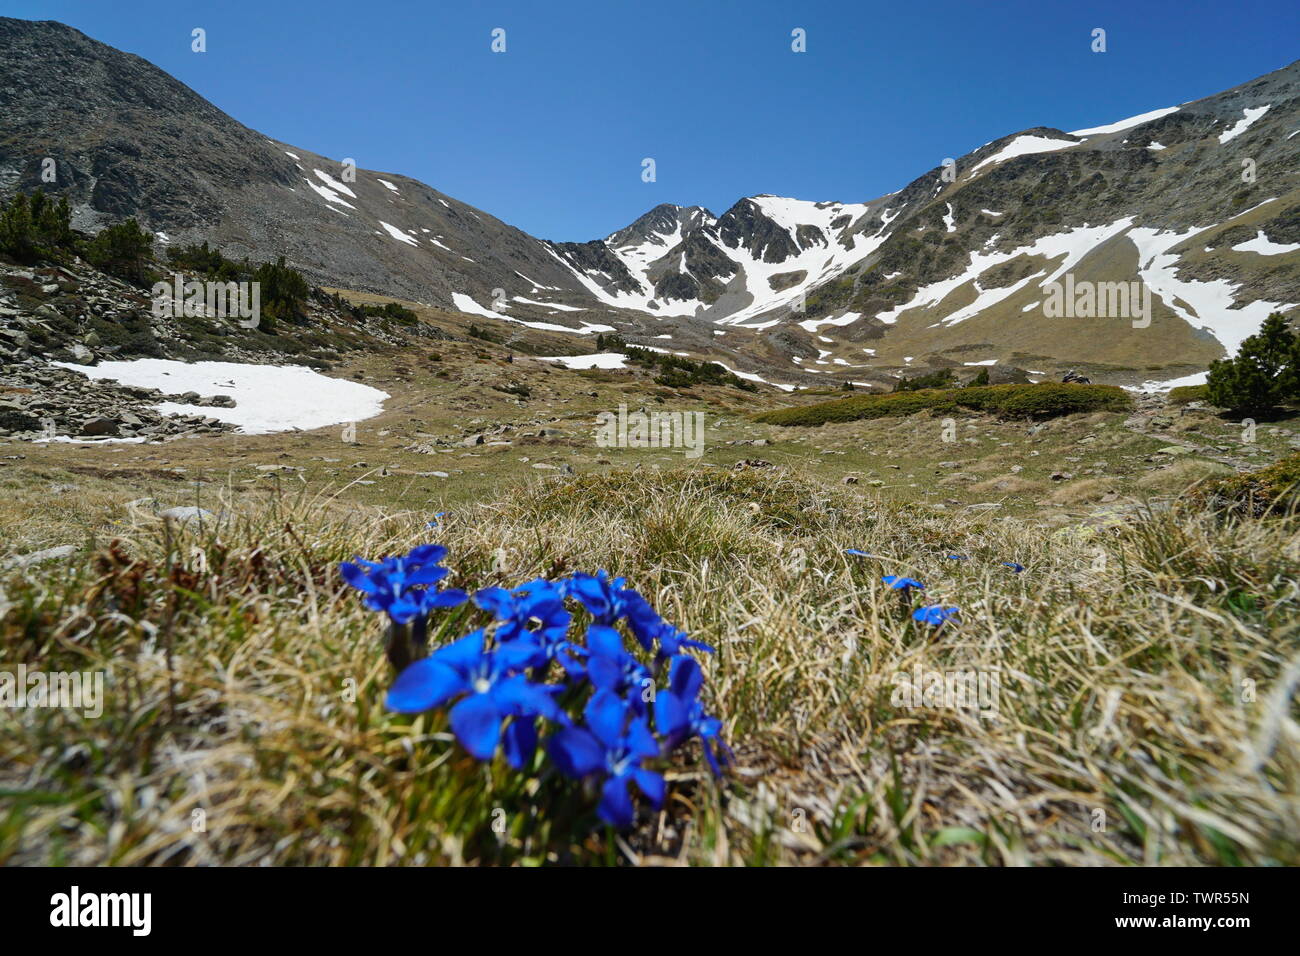 Berglandschaft massiv von Carlit mit blauen Blüten im Vordergrund, Frankreich, Pyrénées-orientales, Naturpark der katalanischen Pyrenäen Stockfoto